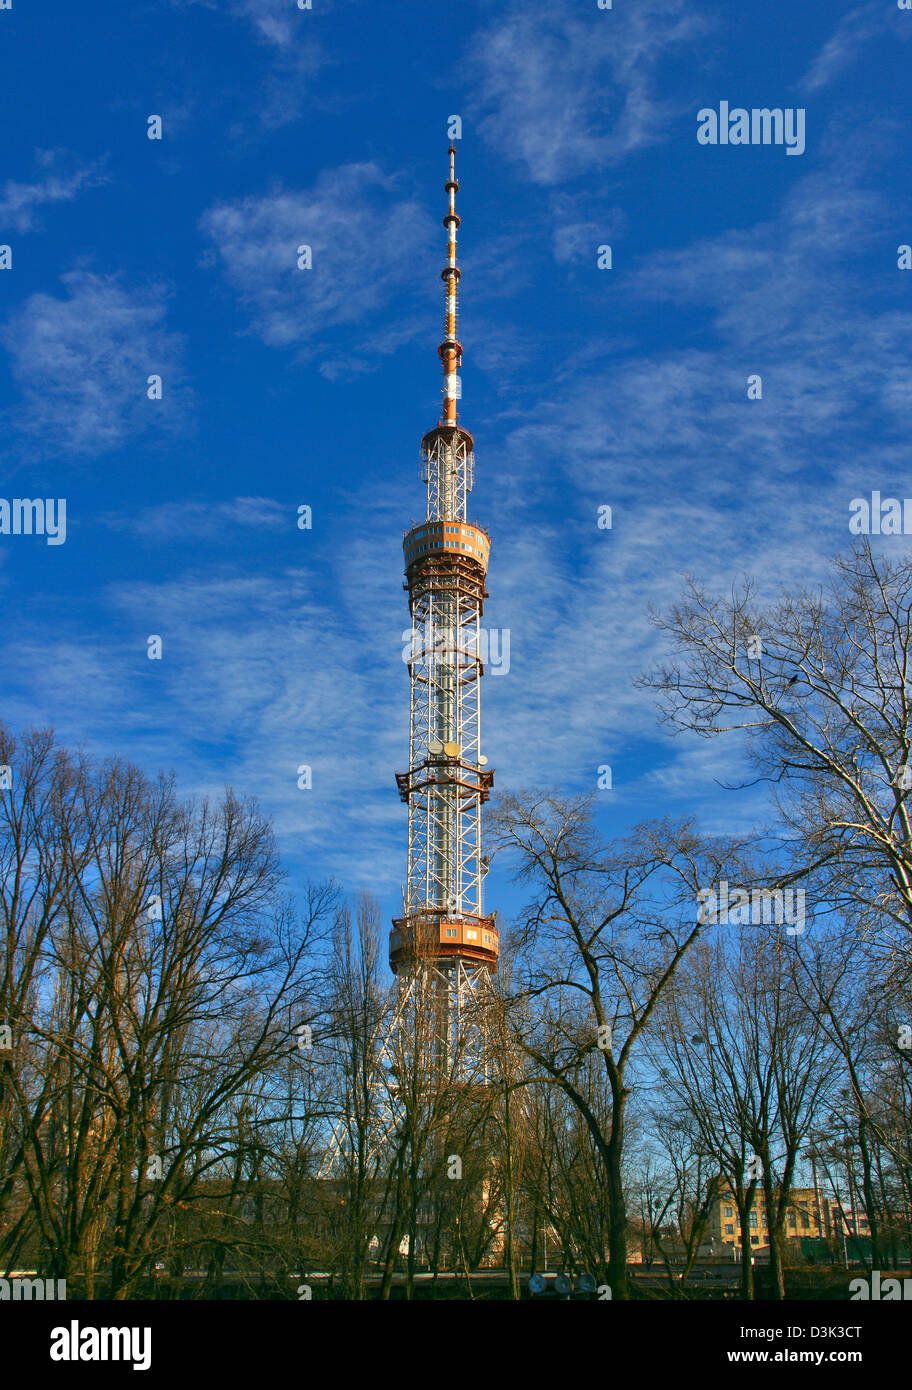 Tour de télévision de Kiev est un 385 m (1 263 pieds) d'un mât en treillis construit en 1973 pour la radio et la télévision. Panorama vertical Banque D'Images